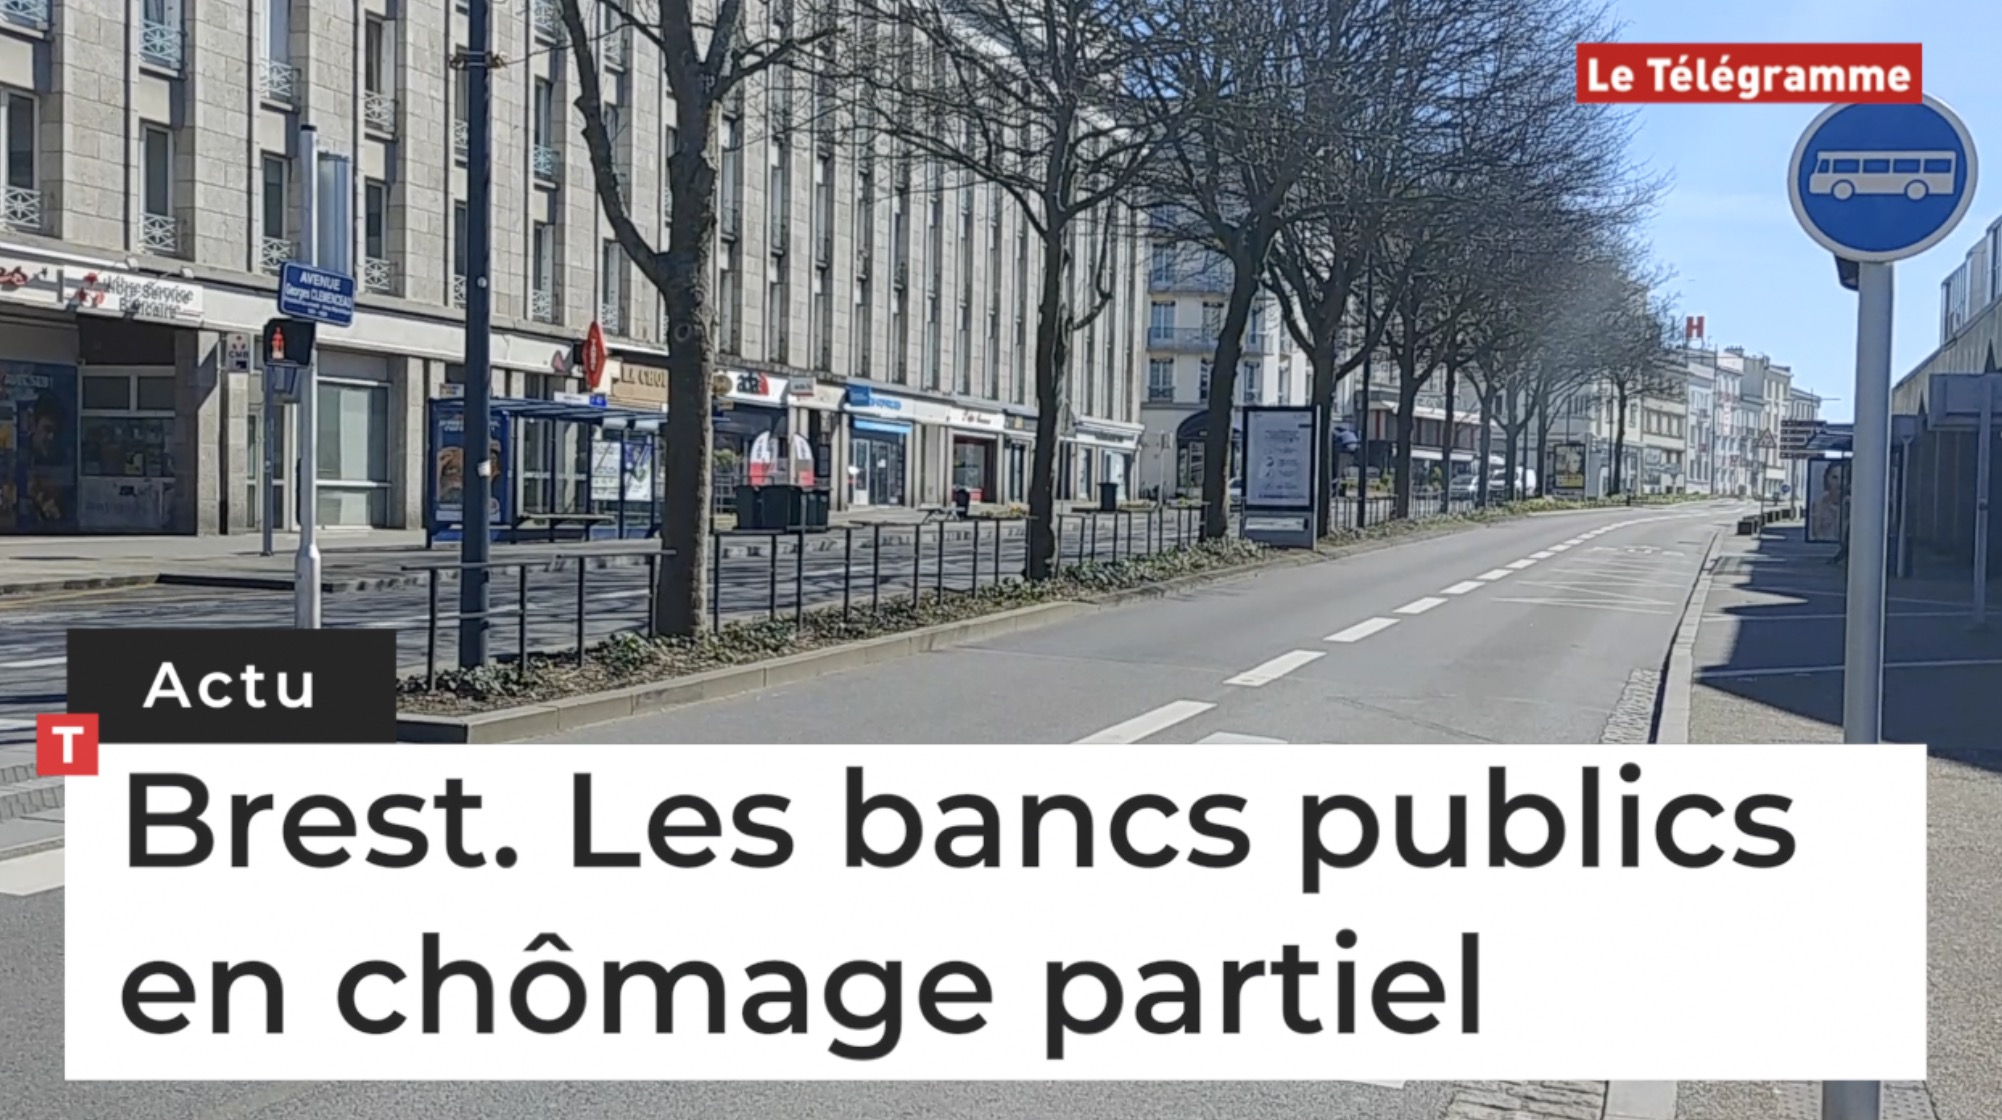 Brest. Les bancs publics en chômage partiel (Le Télégramme)